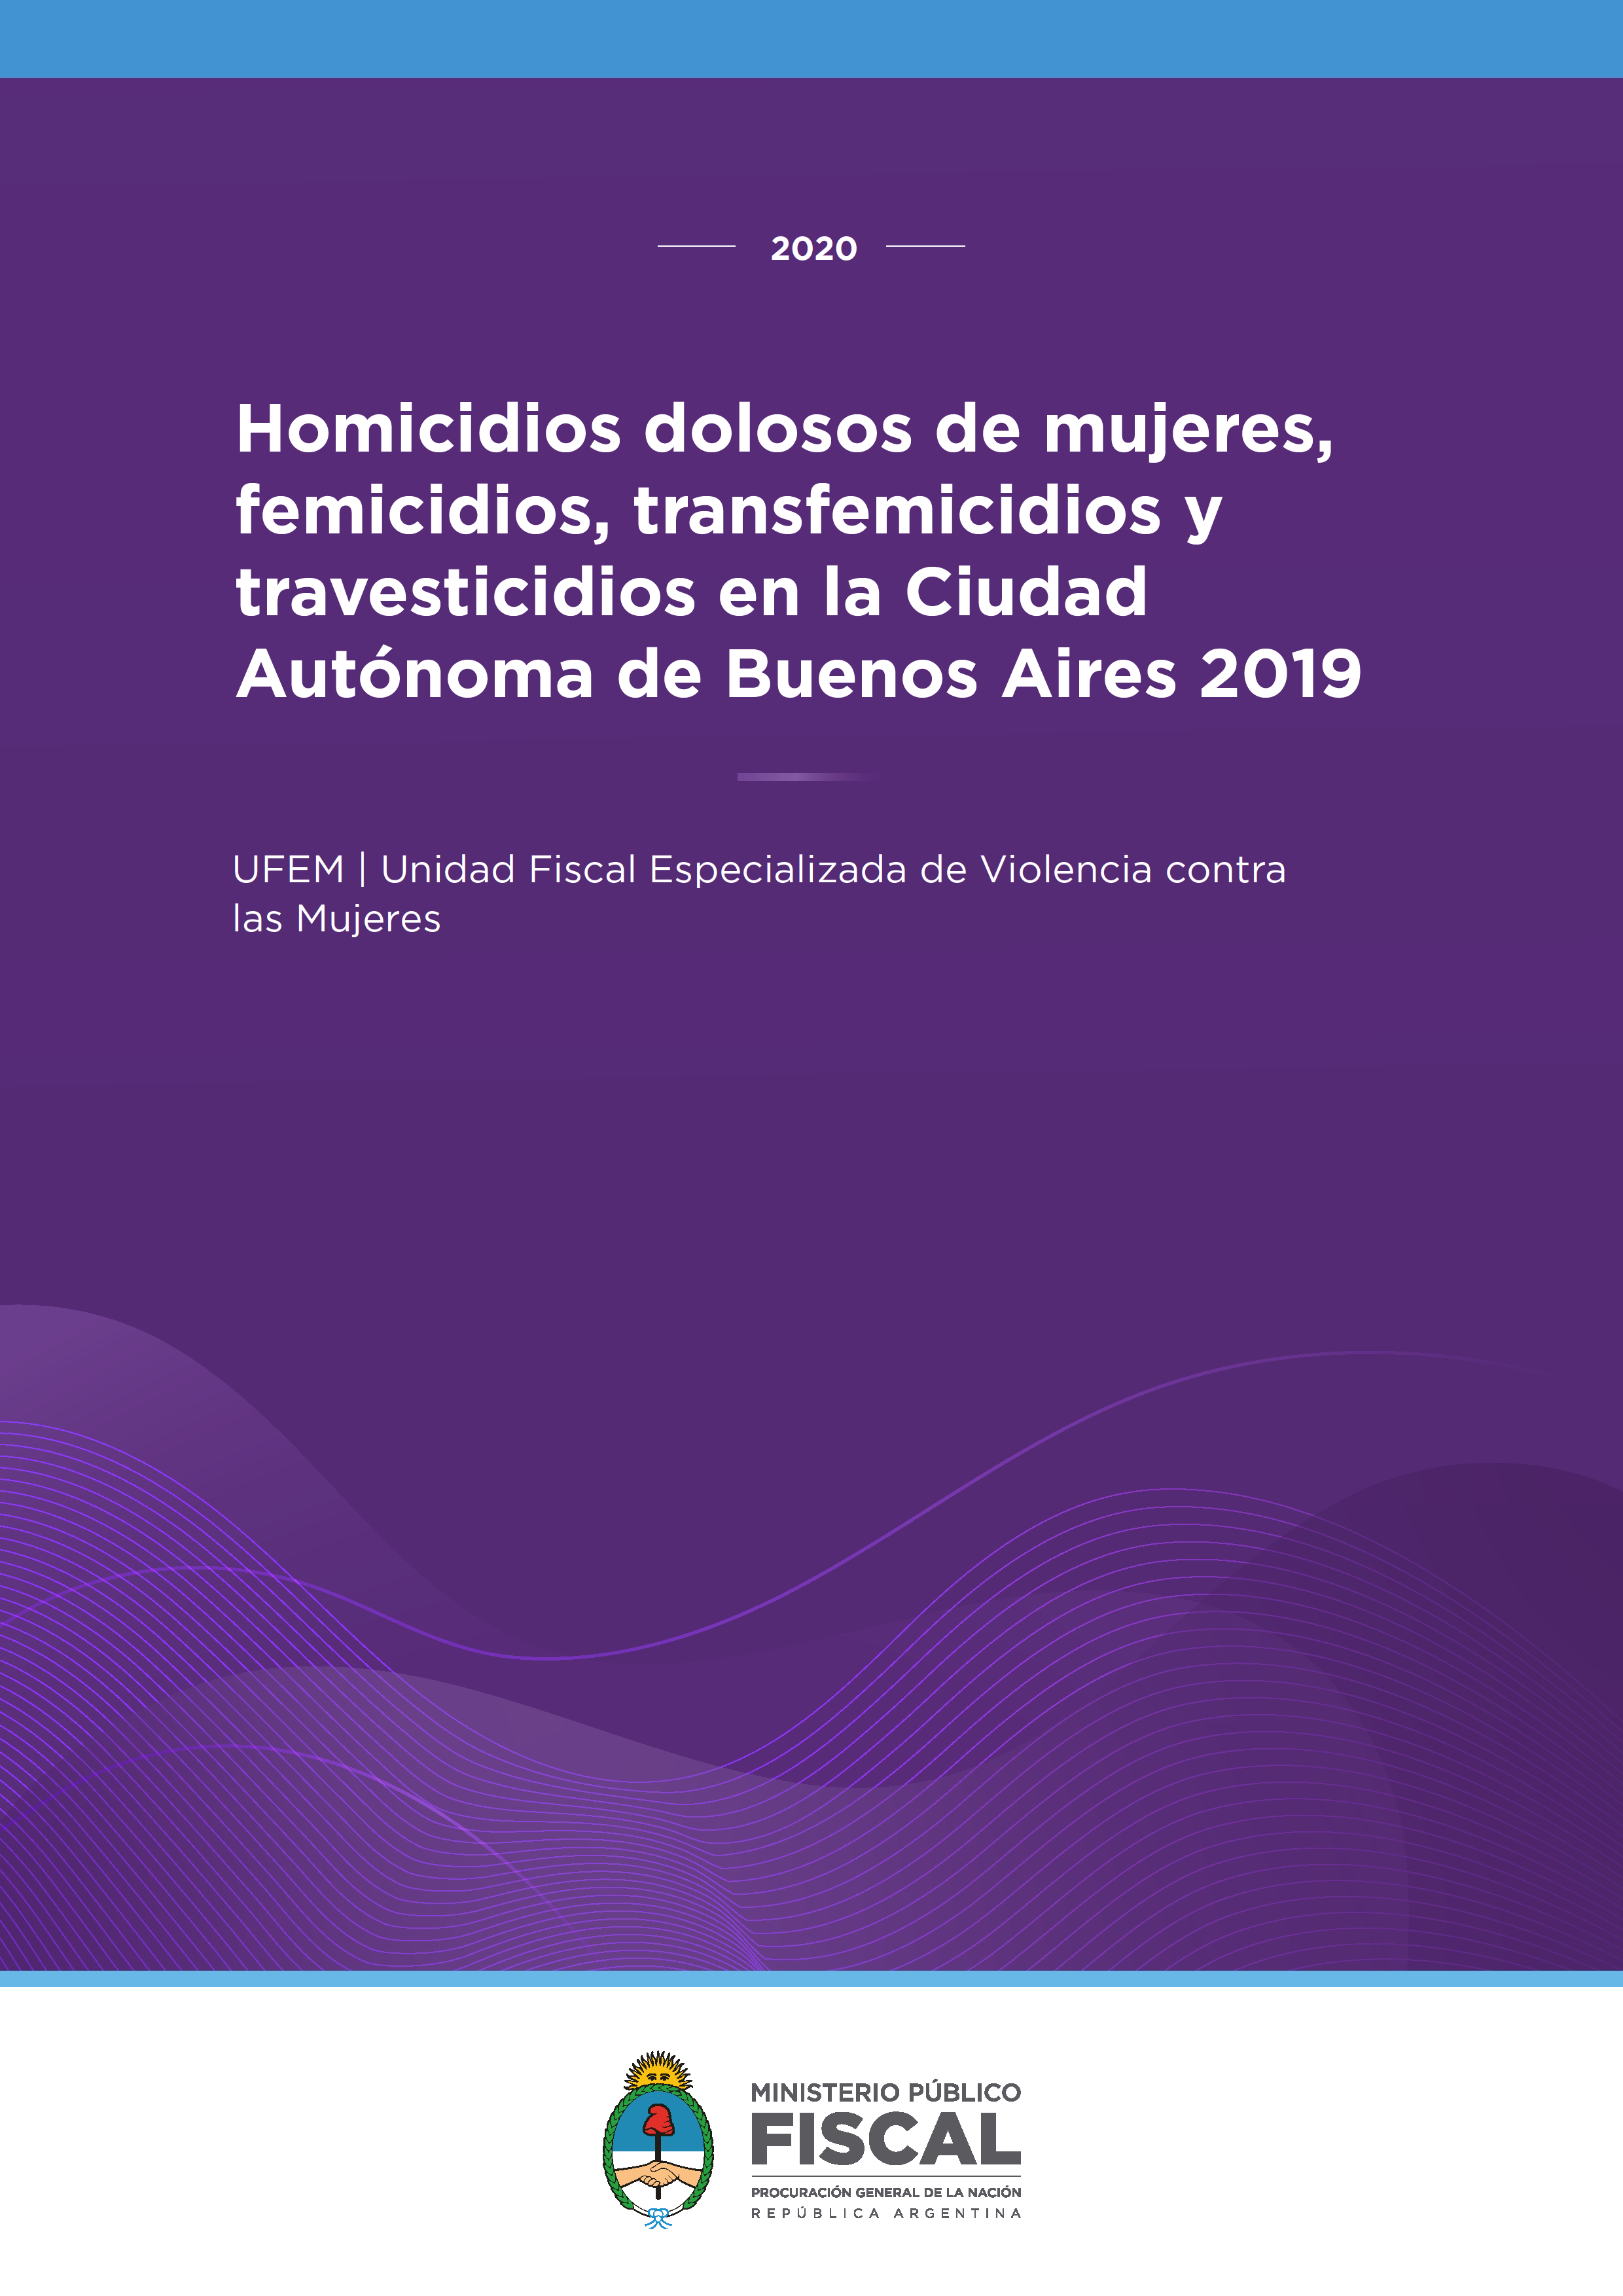 Homicidios dolosos de mujeres, femicidios, transfemicidios y travesticidios en la Ciudad Autónoma de Buenos Aires 2019